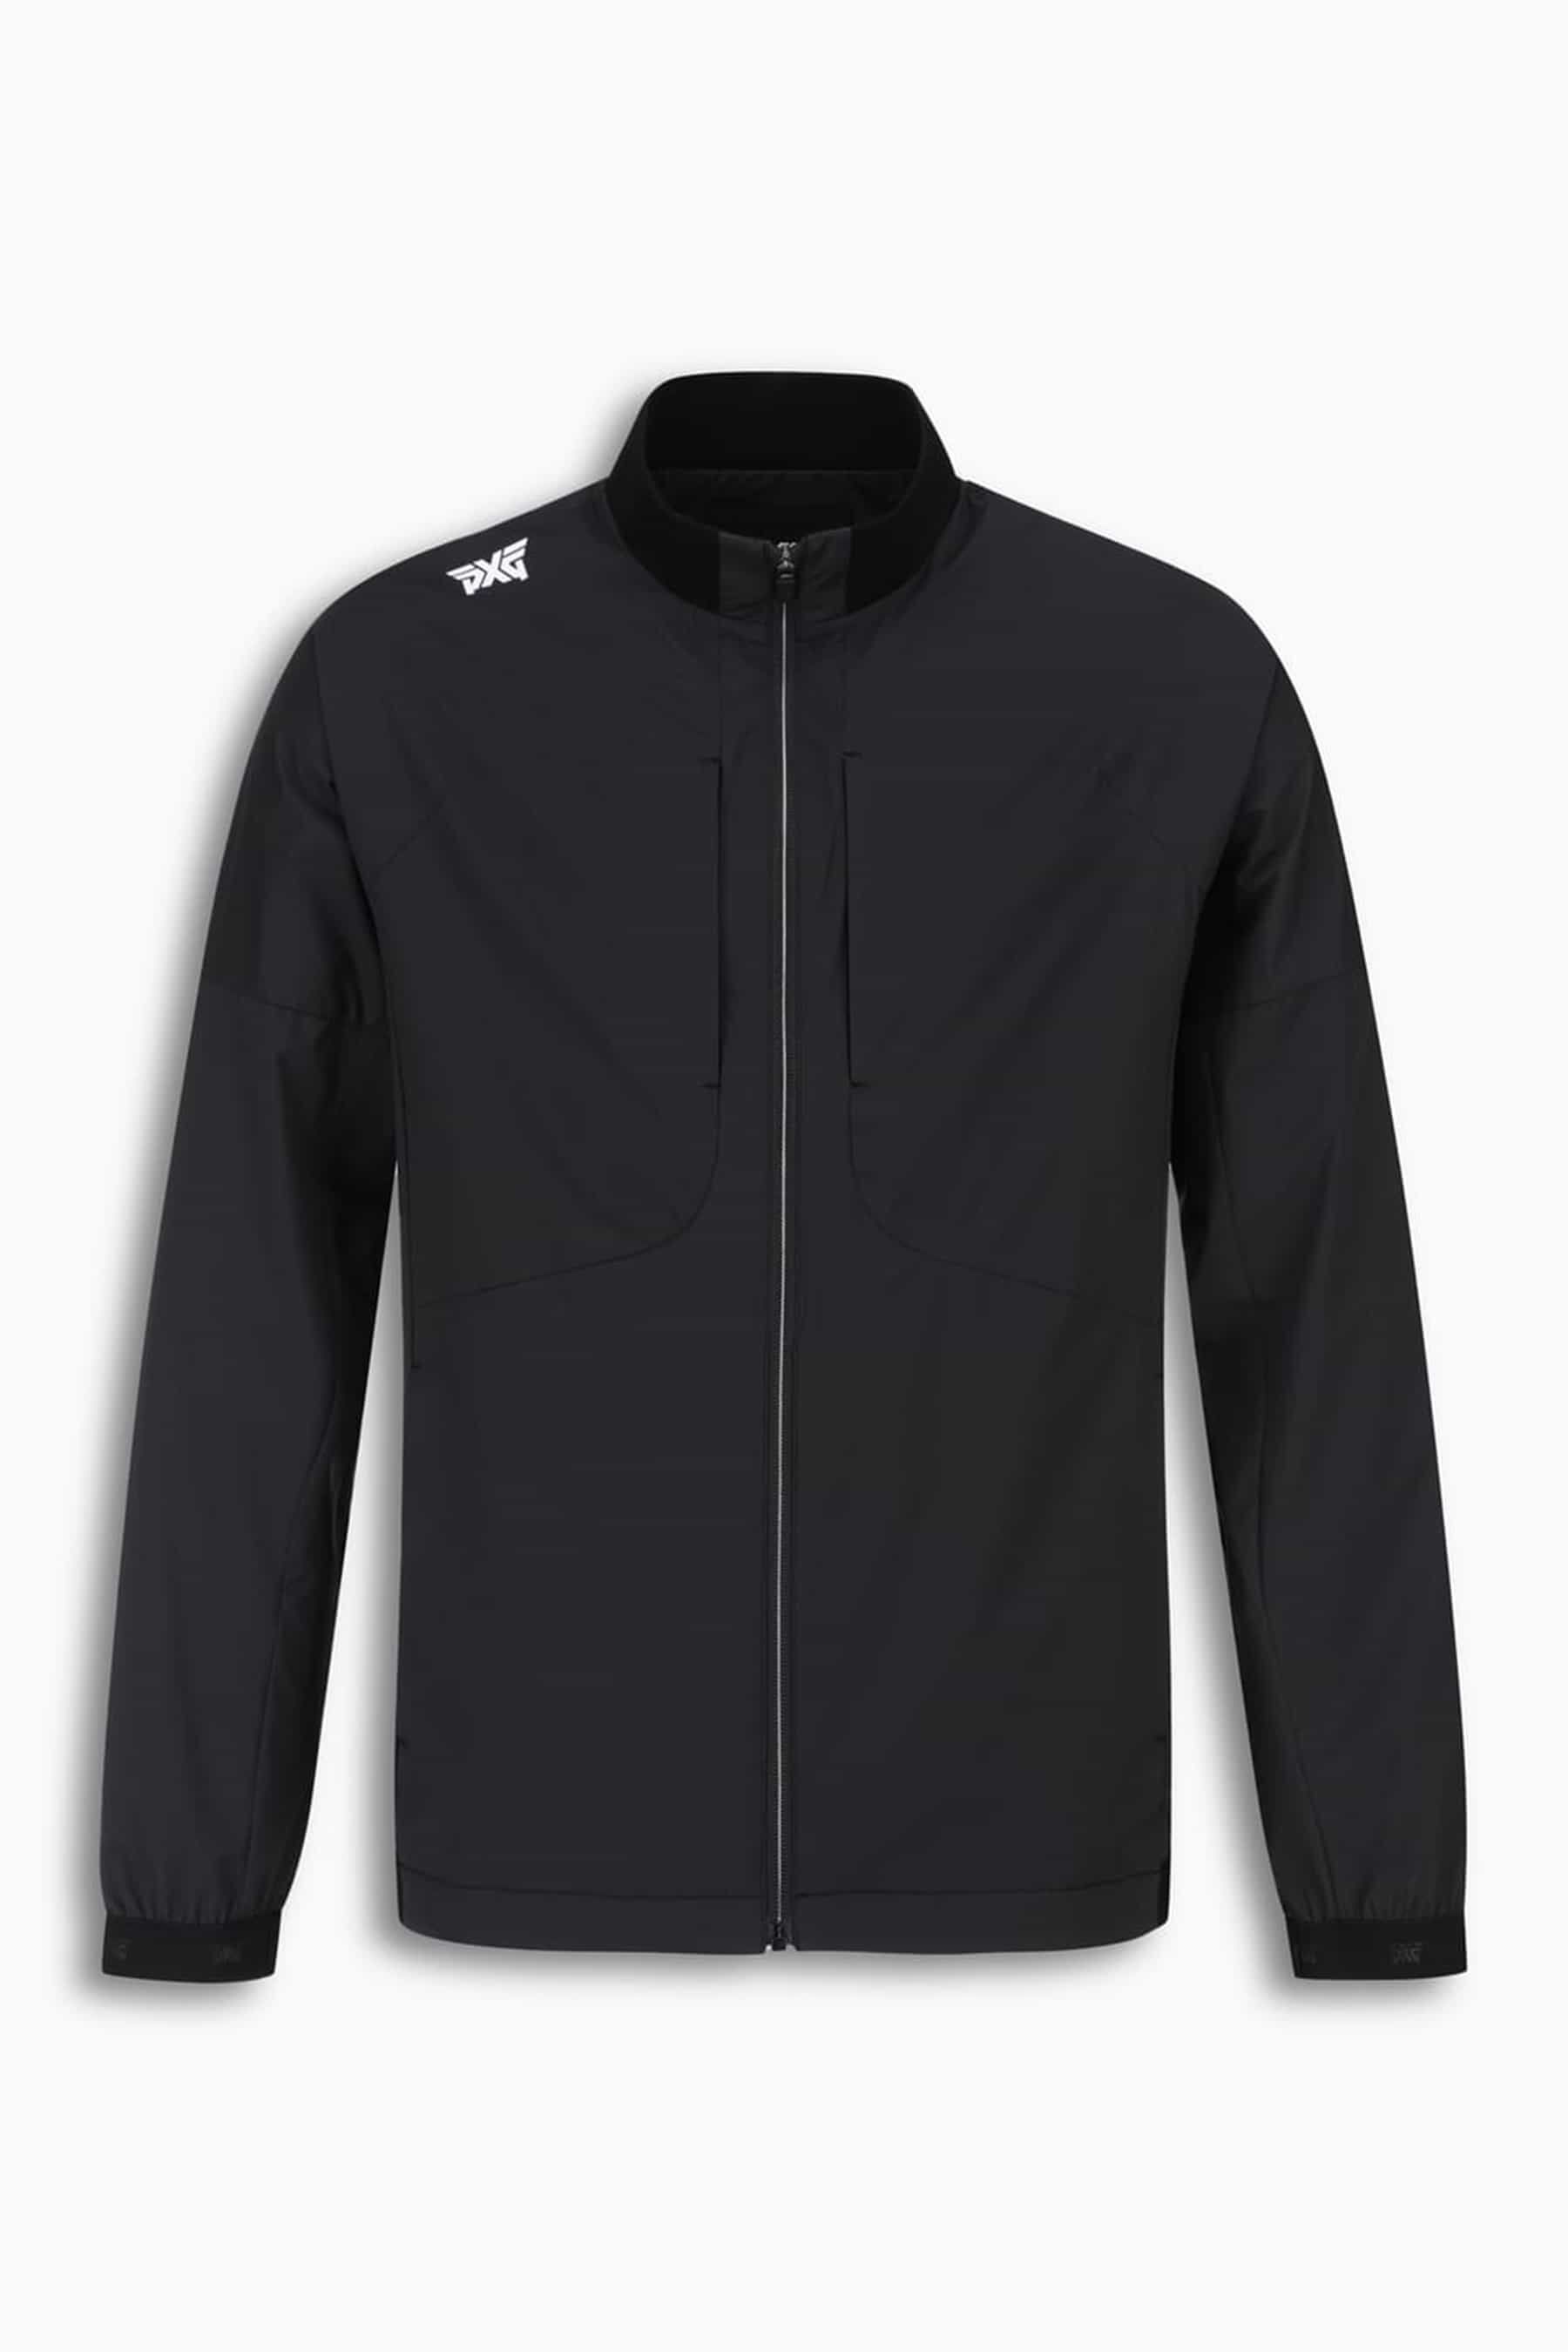 Shop Men's Golf ジャケット and Coats - Online or In-Store | PXG JP